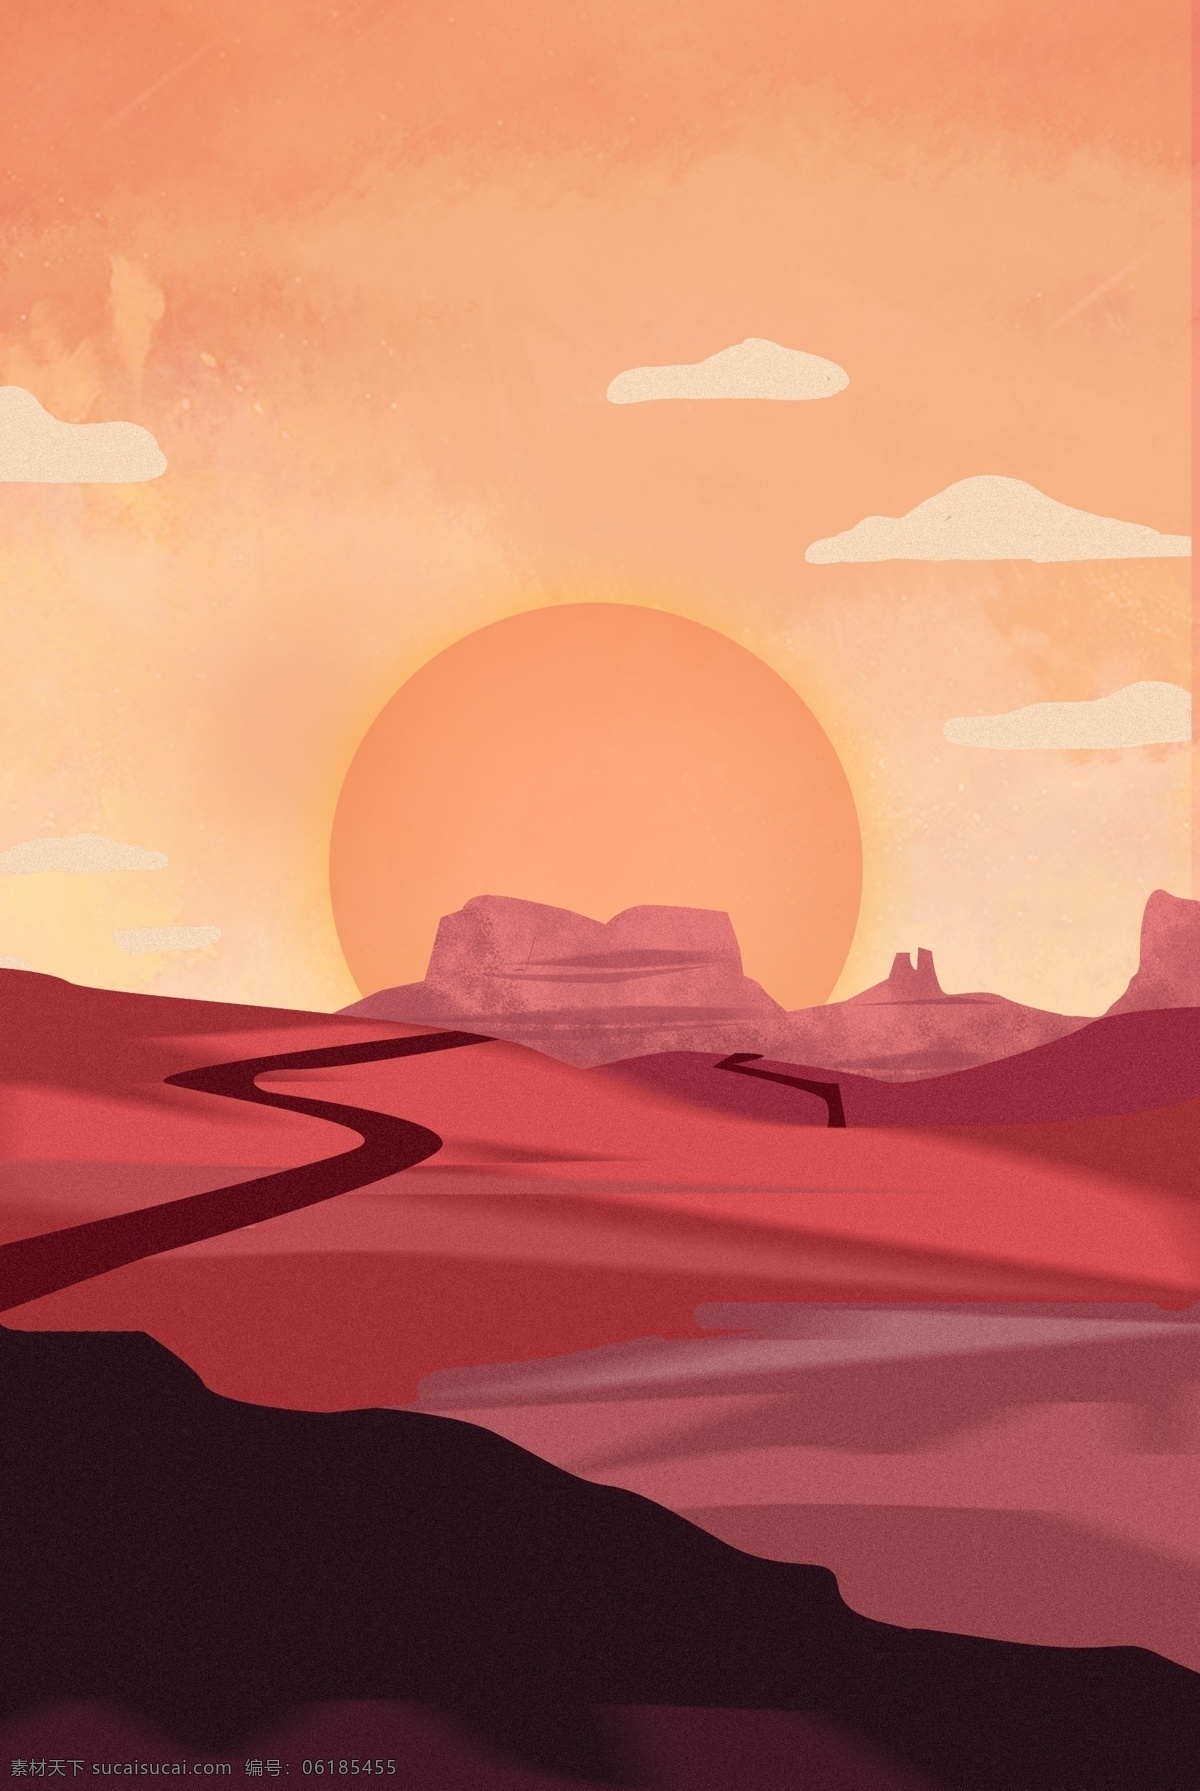 颜色 沙漠 背景 沙漠背景 戈壁背景 荒凉沙漠 psd背景 简约背景 通用背景 海报背景 简约